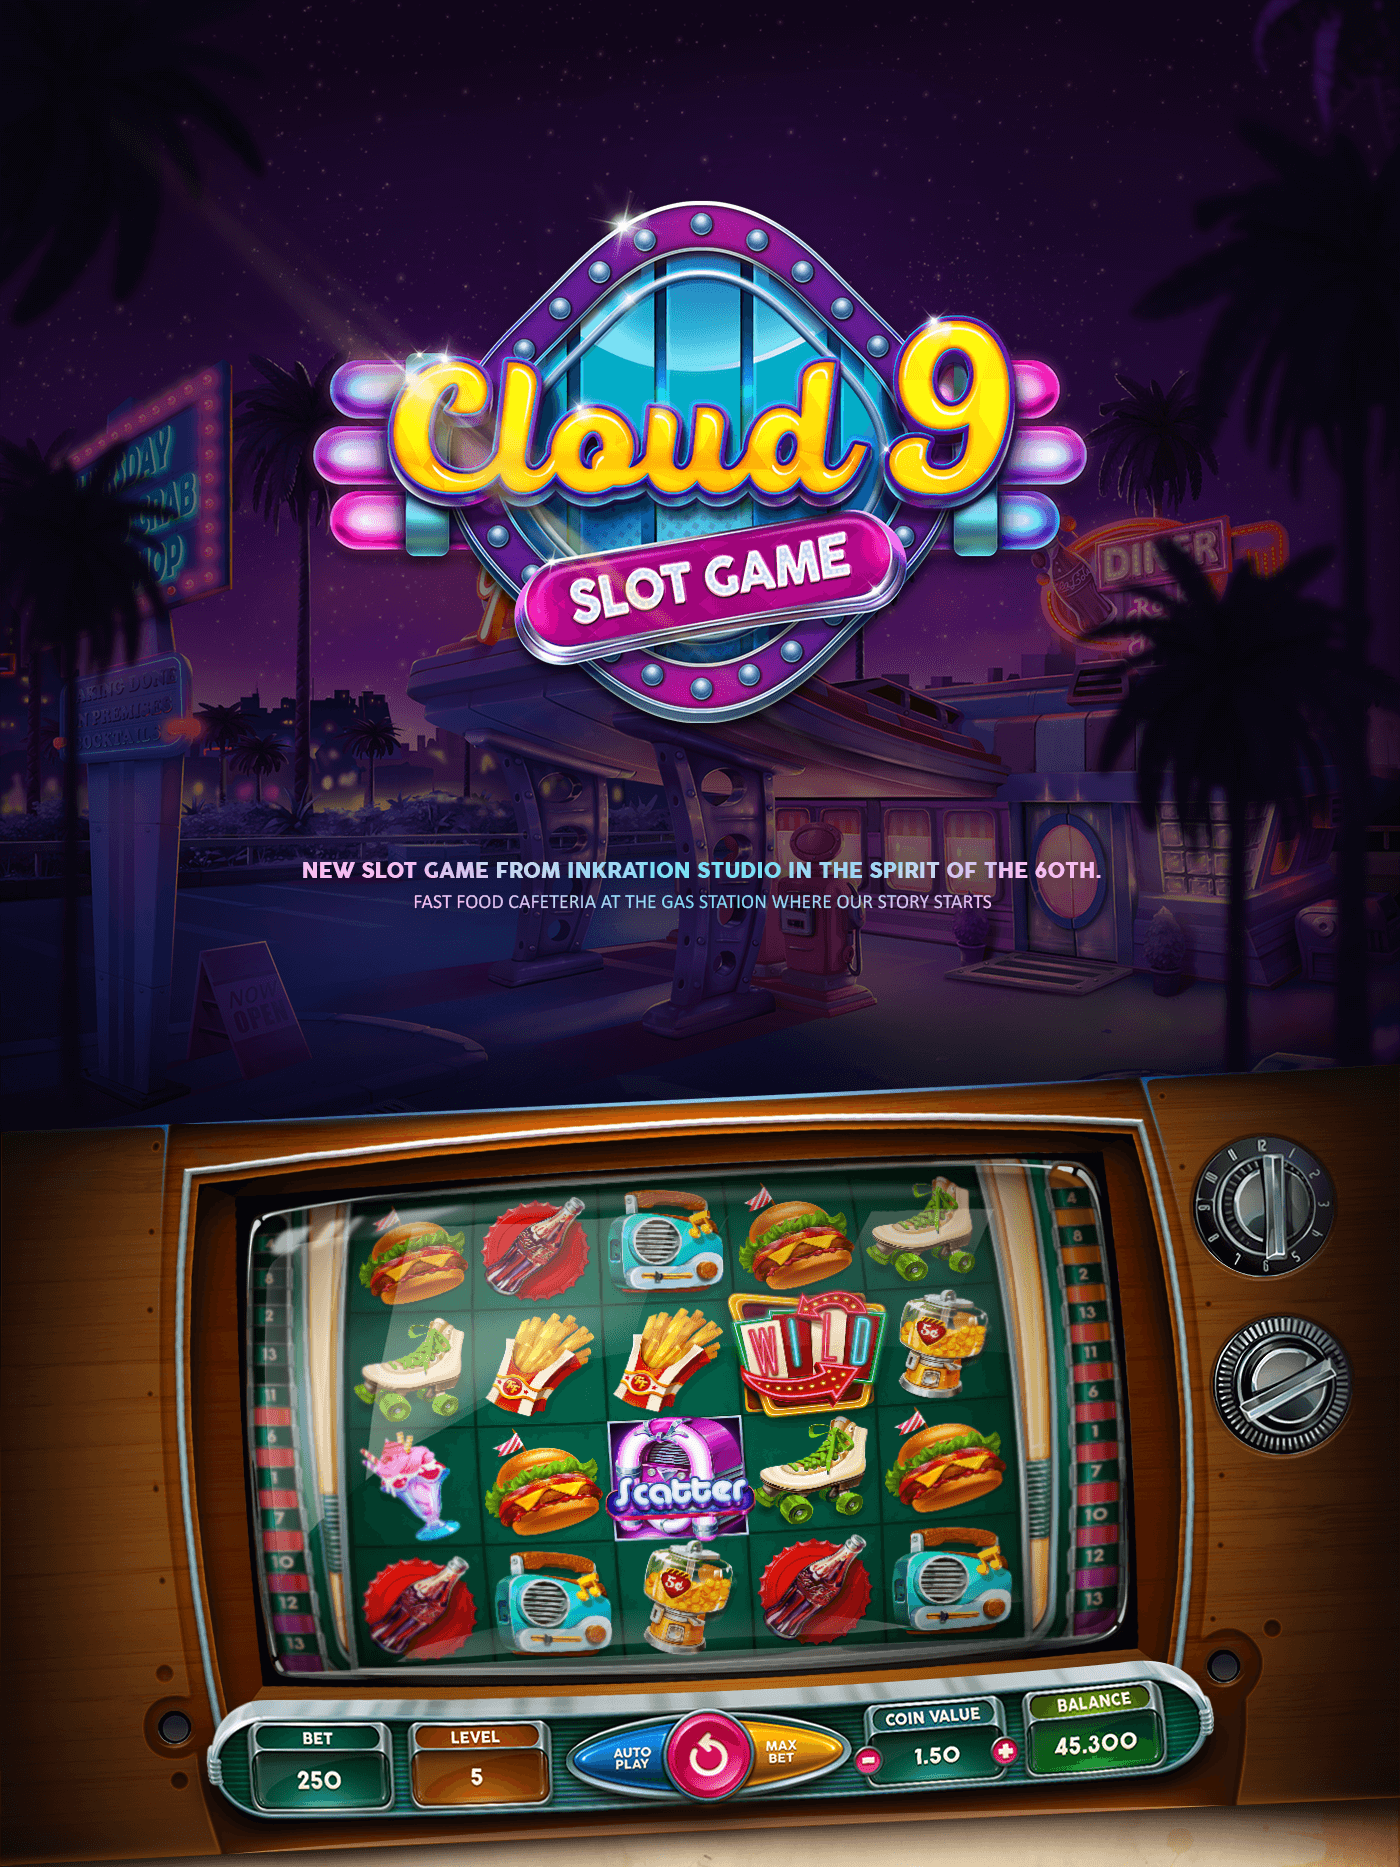 Cloud 9 slot machine art